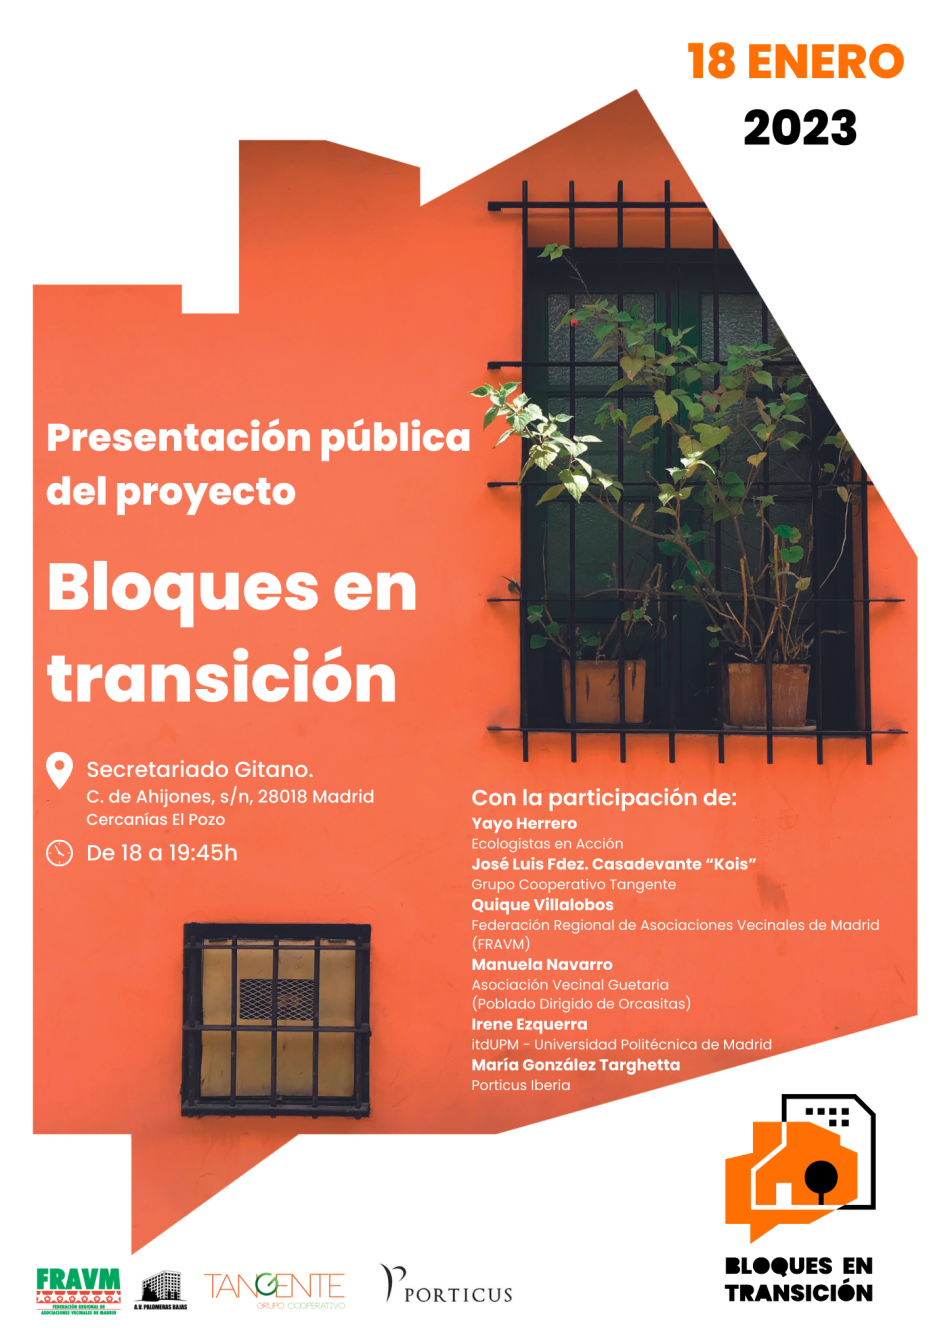 El próximo 18 de enero se presenta en Vallecas el proyecto “Bloques en Transición”